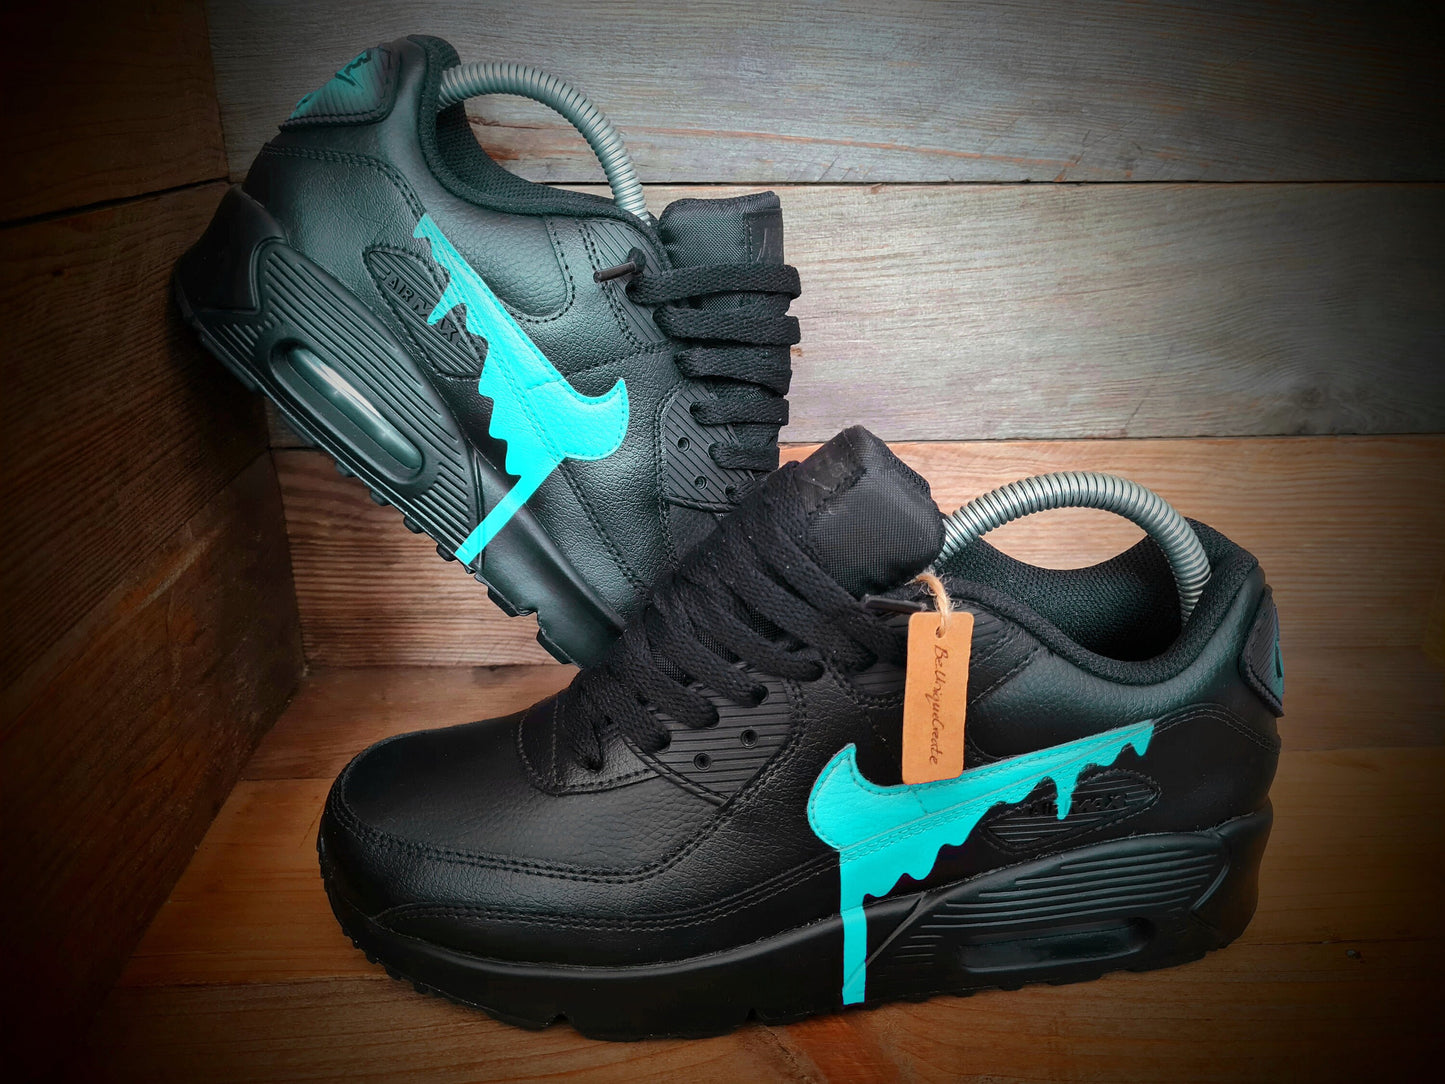 Custom Painted Air Max 90/Sneakers/Shoes/Kicks/Premium/Personalised/Aqua Drip